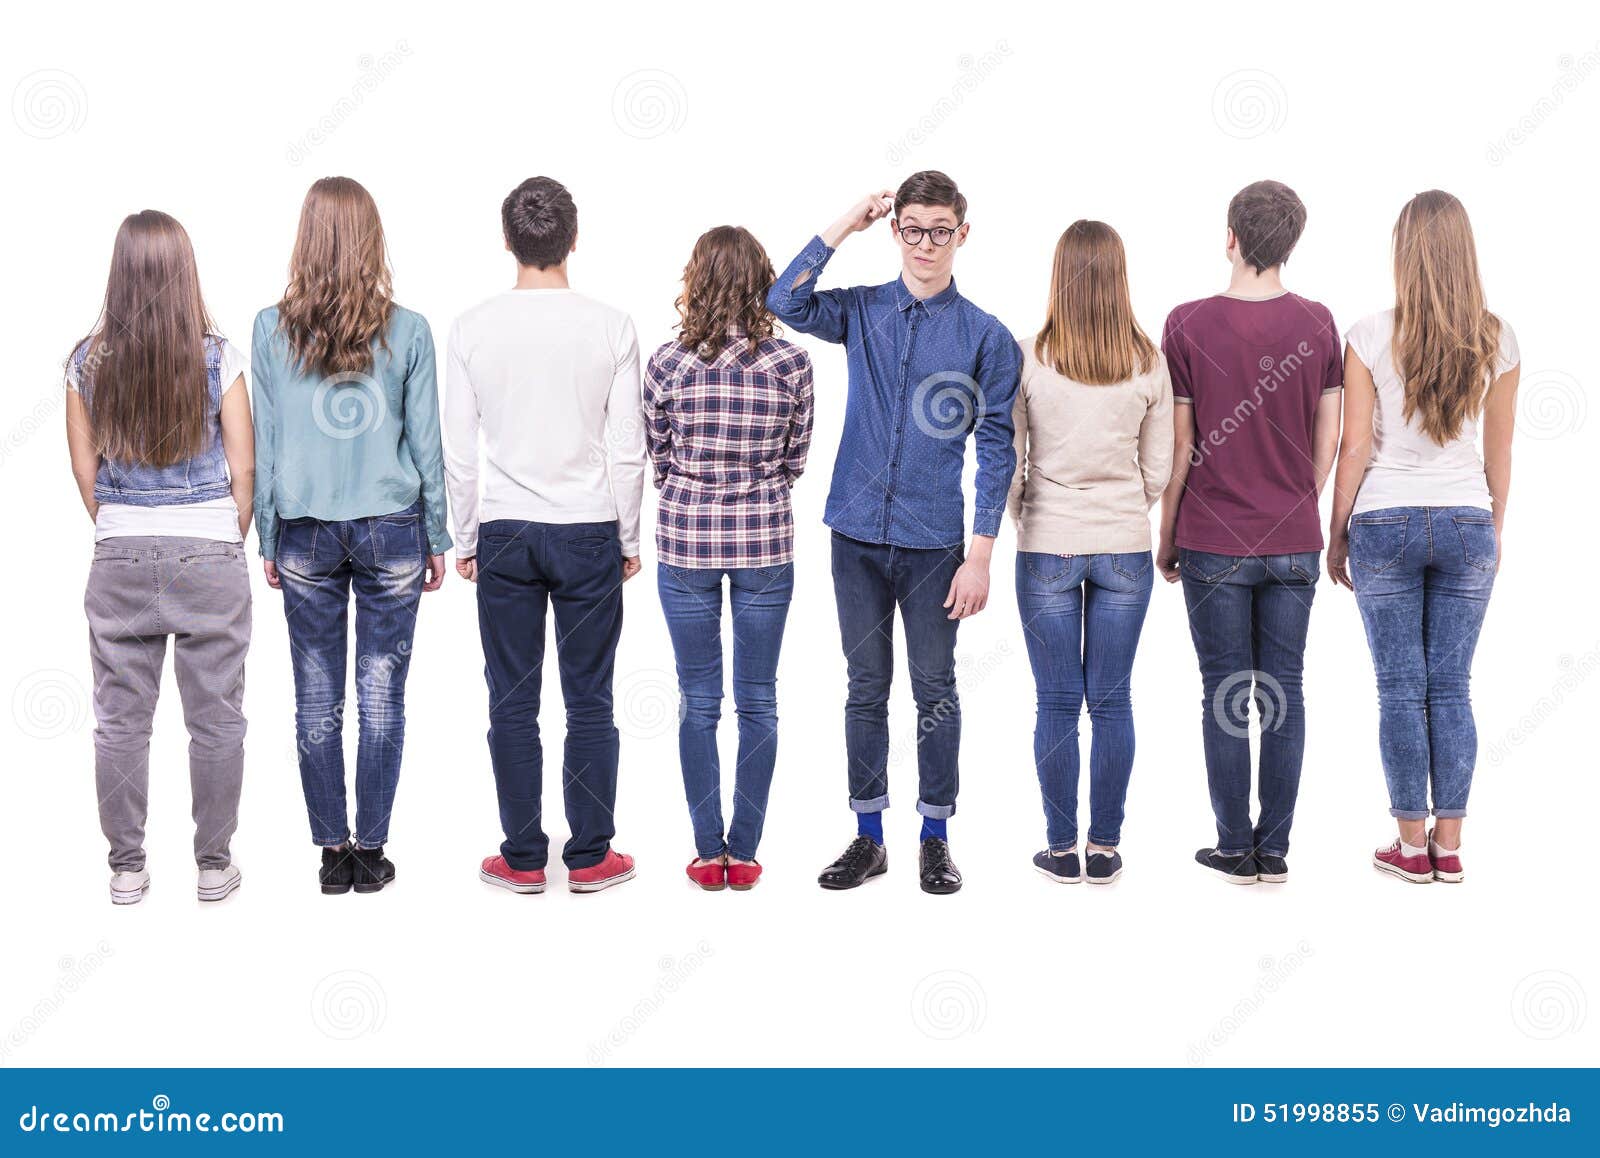 Подростки стоят. Подросток стоит спиной. Люди стоящие спиной к зрителю. Человек подросток стоит.